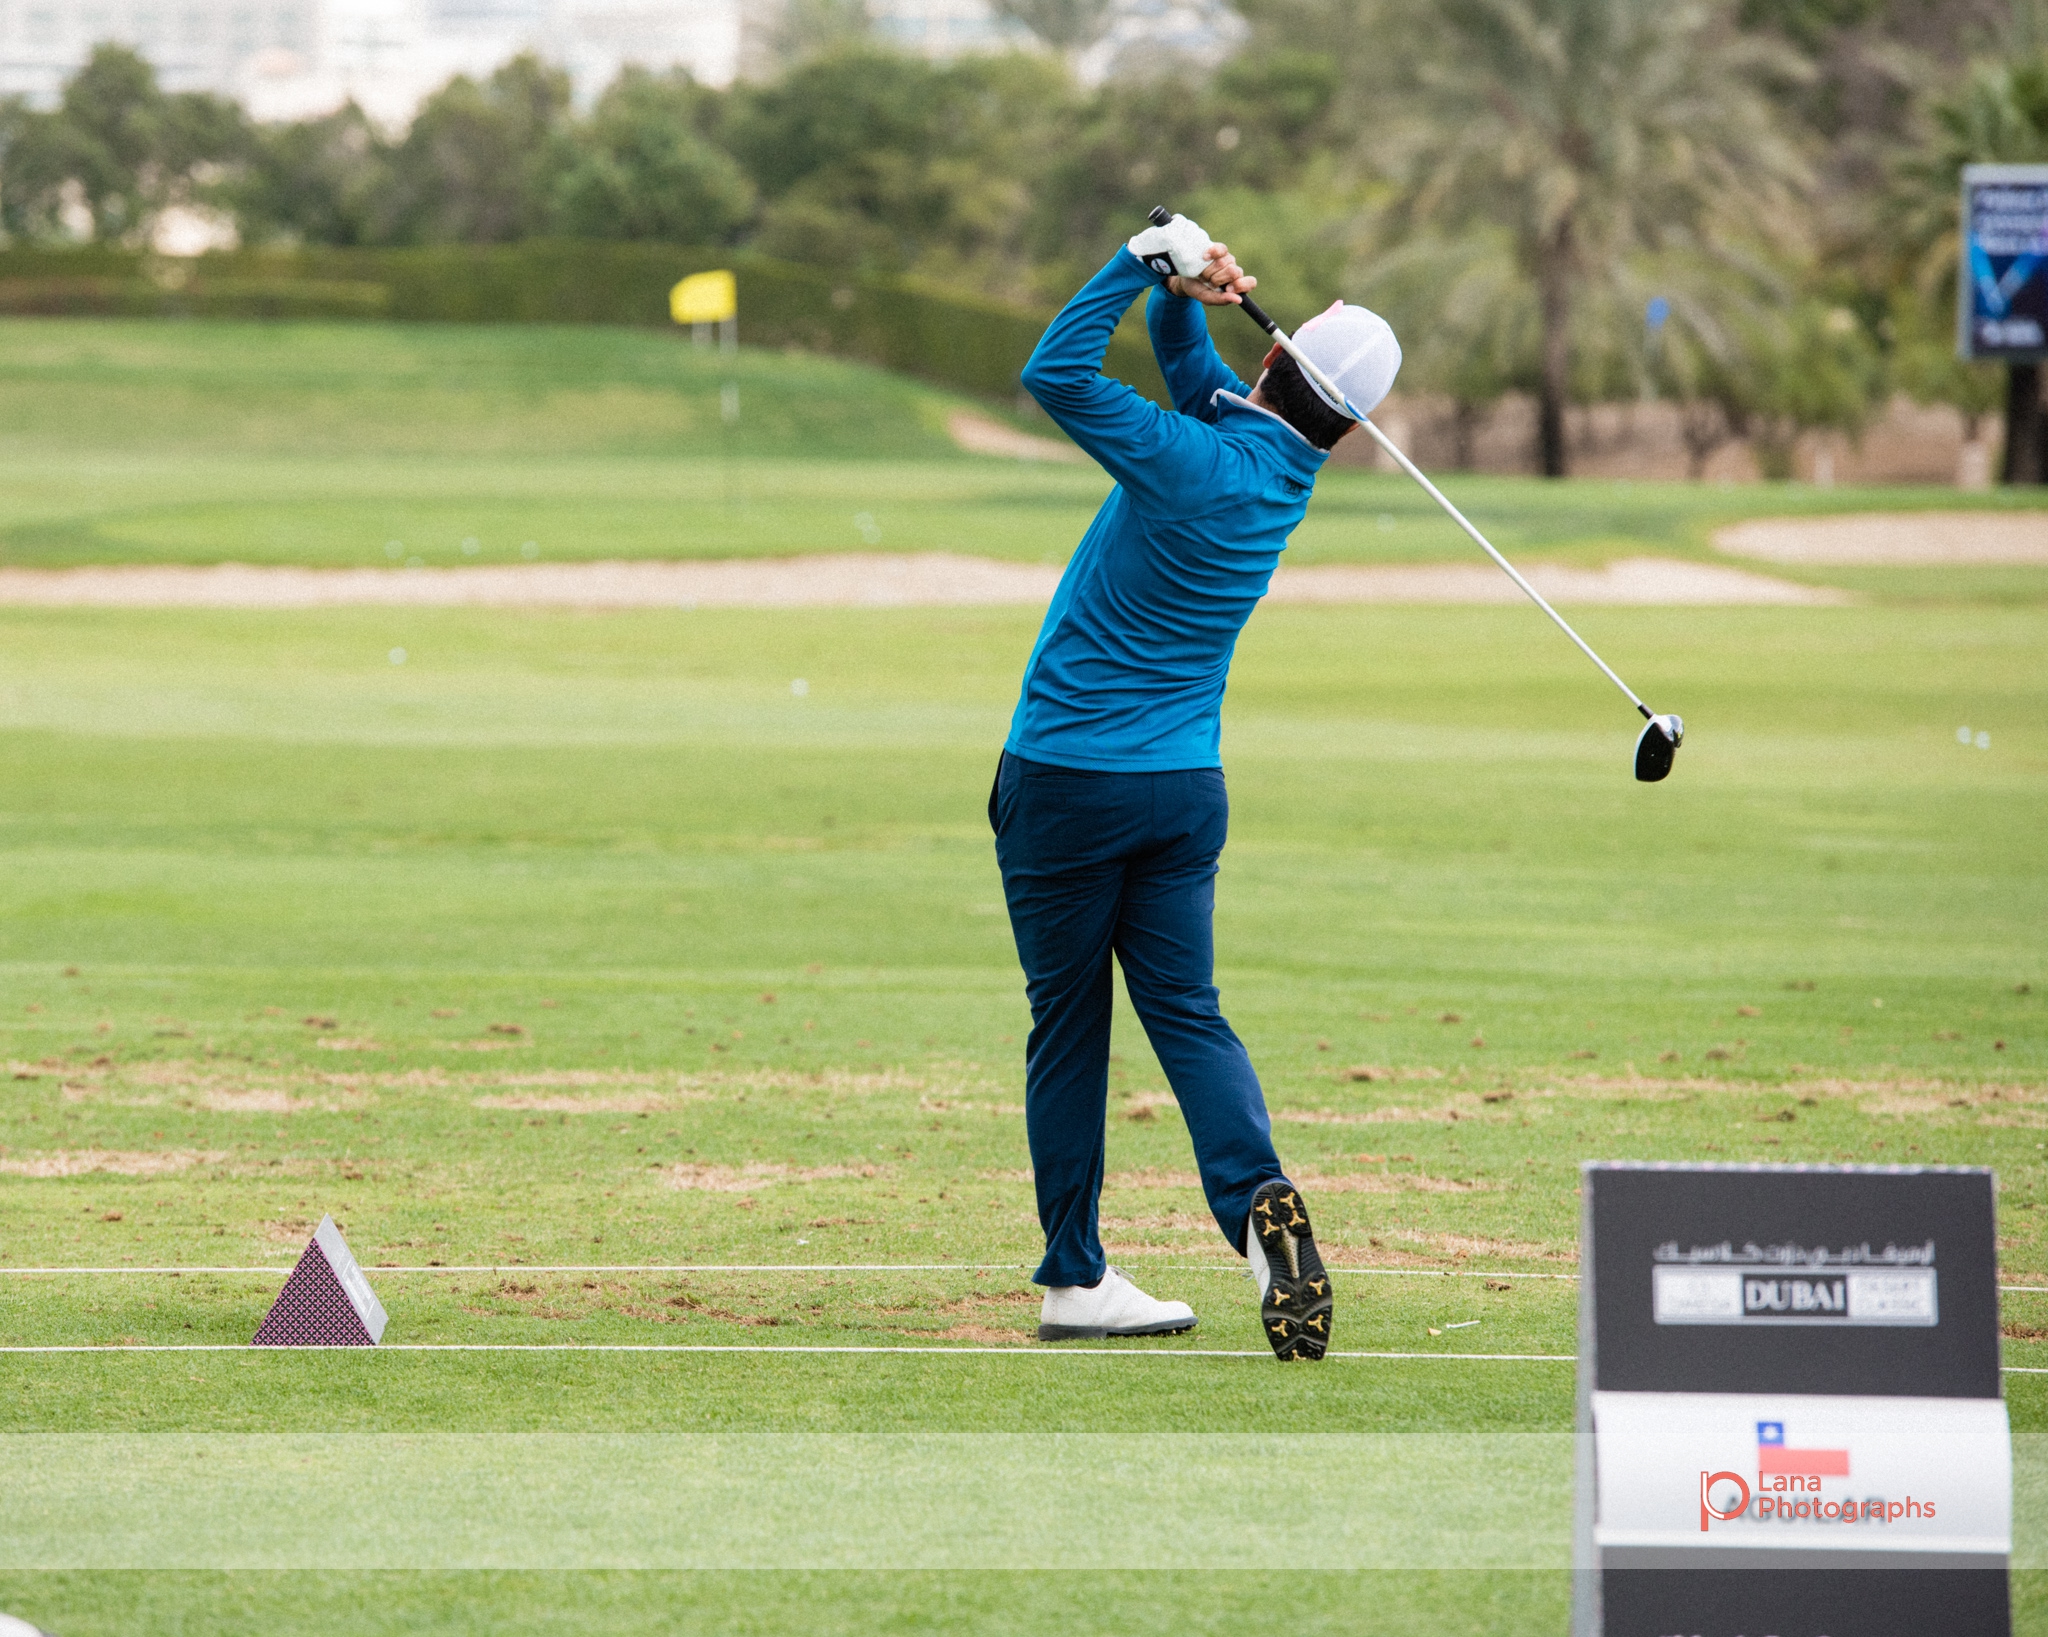   Grégory HAVRET   swings as he practices at the golfing range during the Omega Dubai Desert Classic in Dubai February 2017 